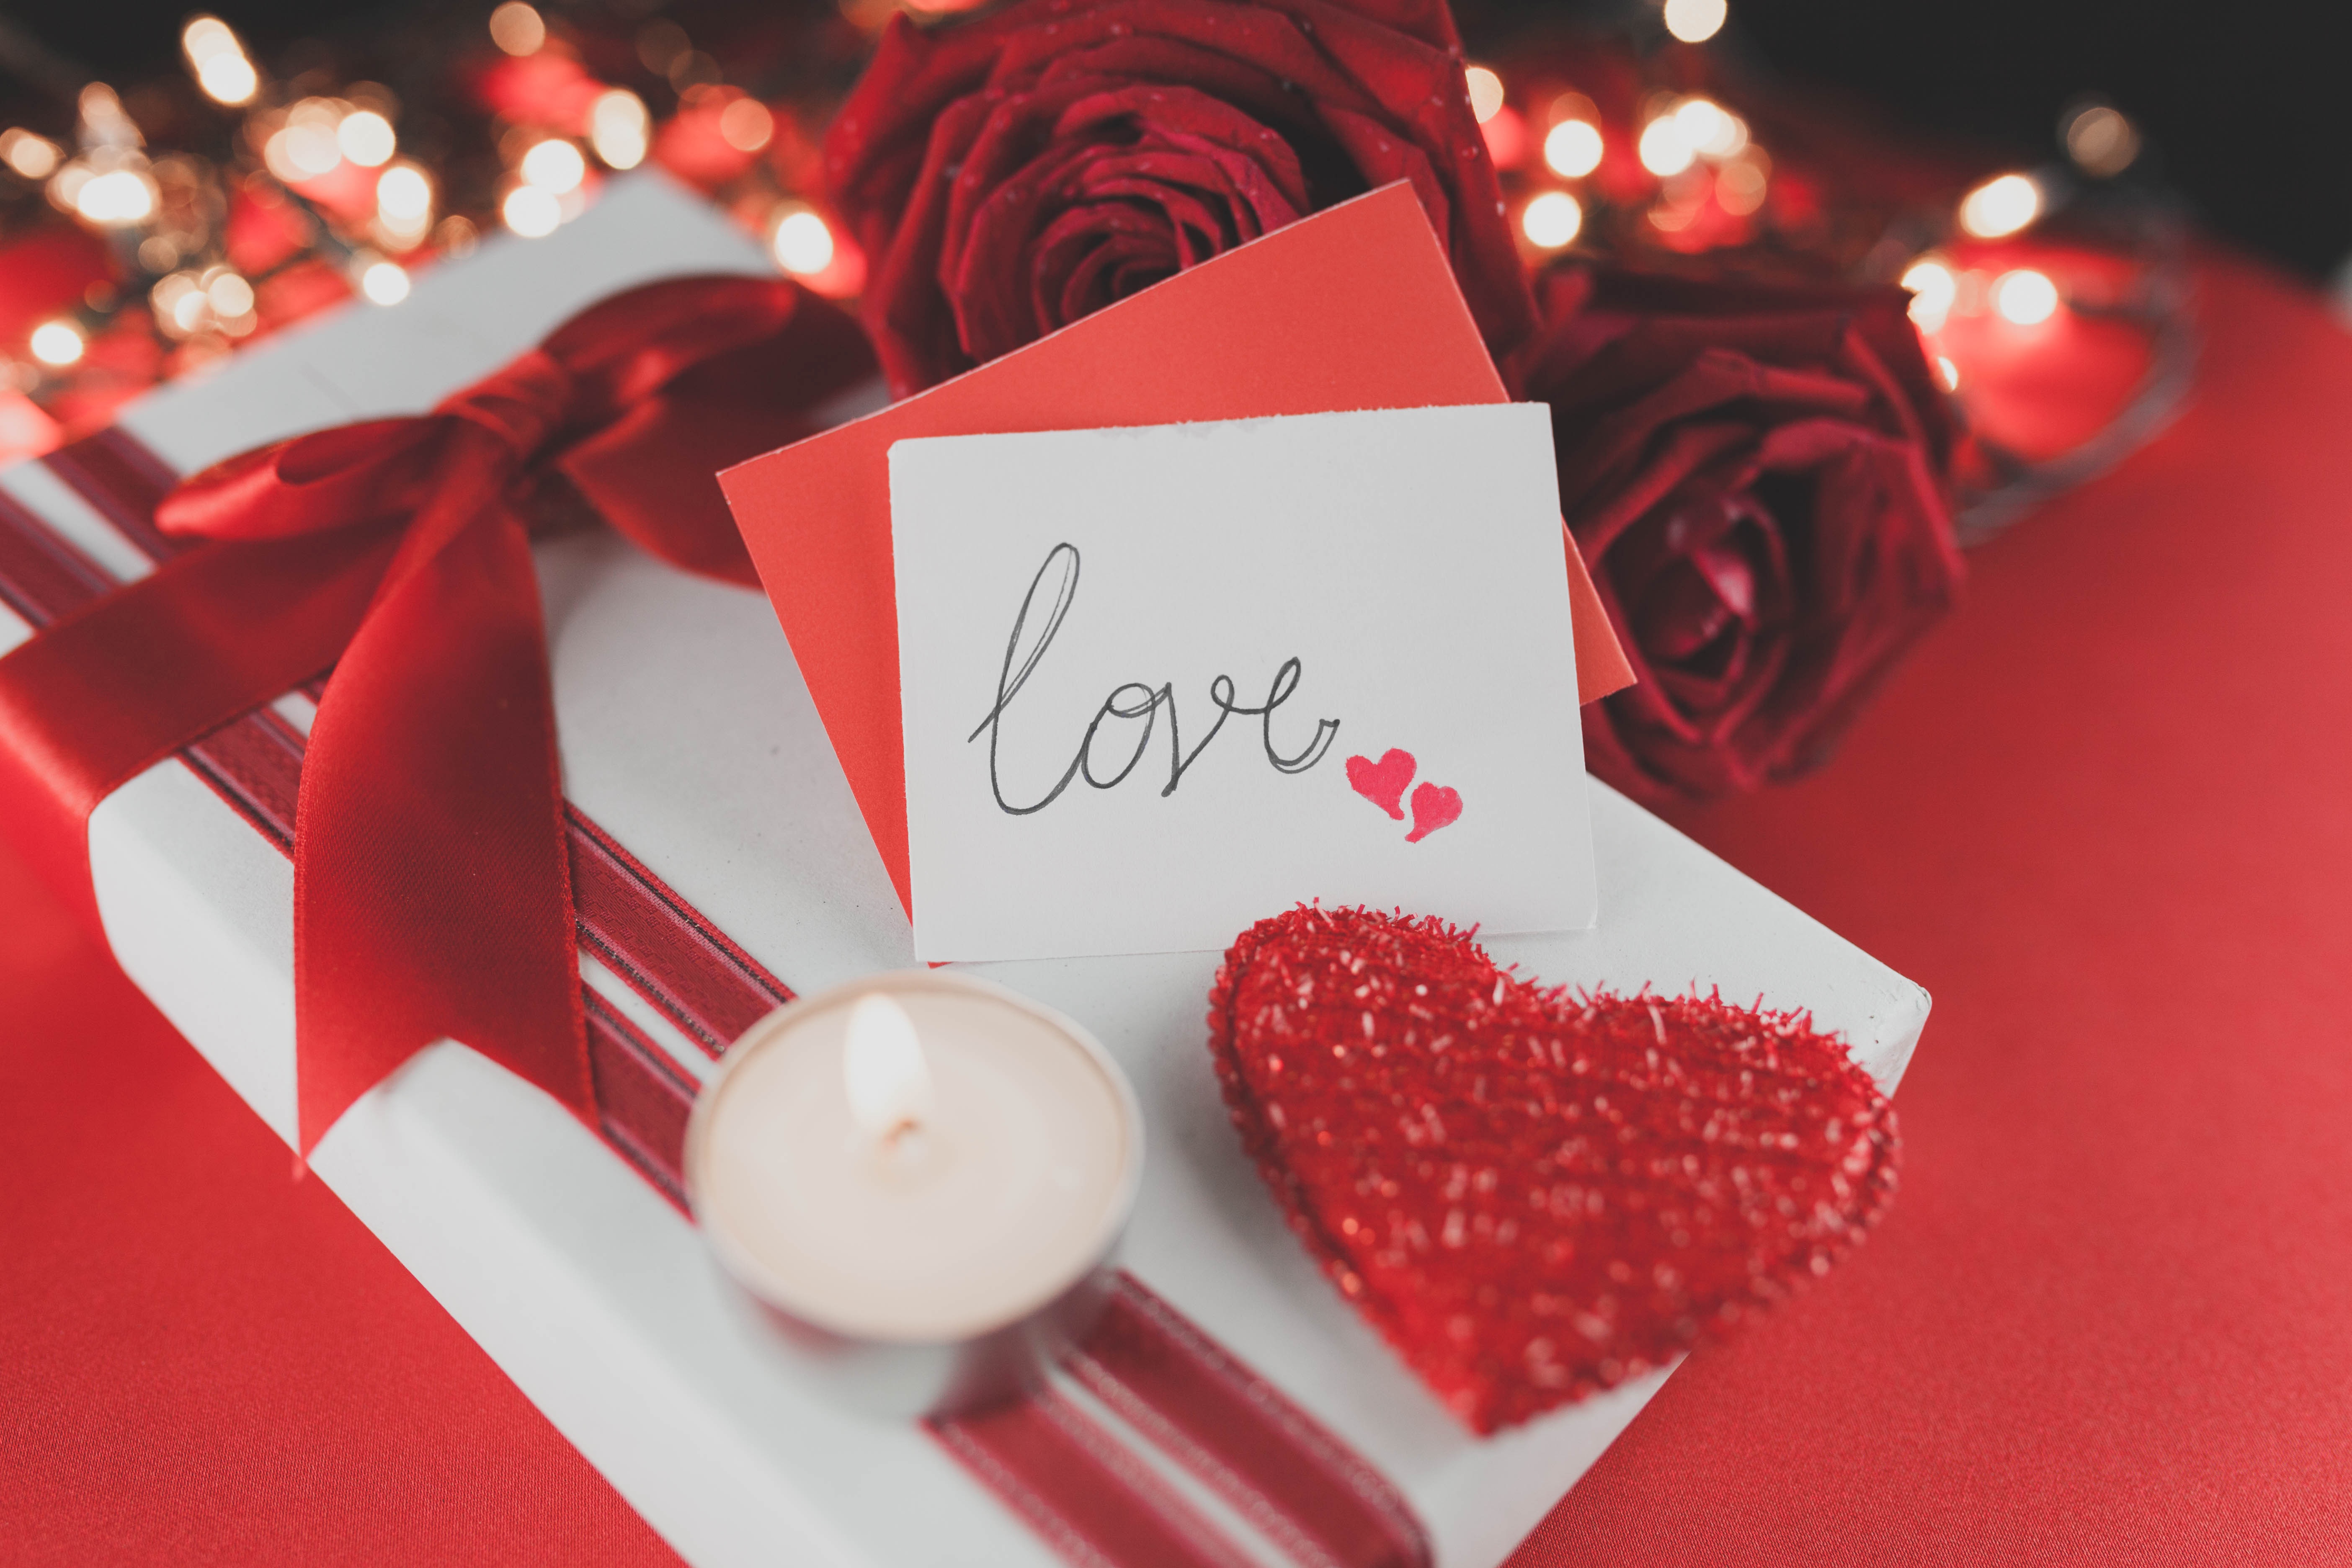 Скачать обои бесплатно Любовь, Сердце, Подарки, День Святого Валентина, Праздничные, Романтический картинка на рабочий стол ПК